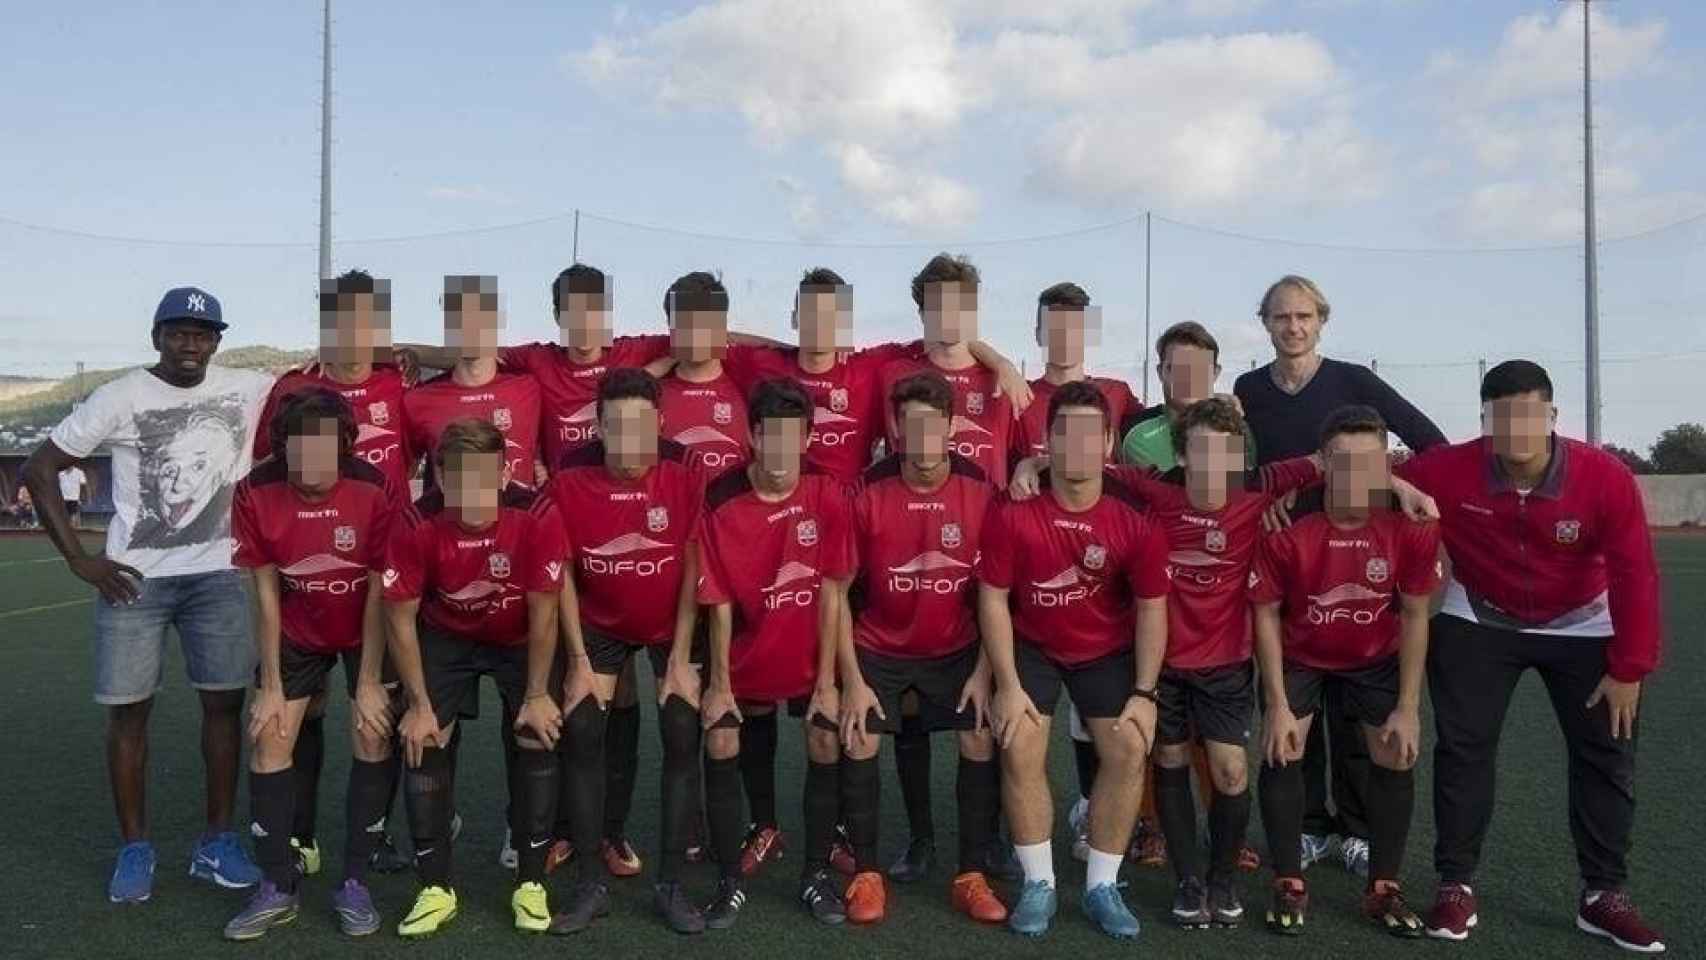 Foto de equipo del S.D. Formentera de 2017. Christian B. es el segundo por la izquierda en la fila posterior.